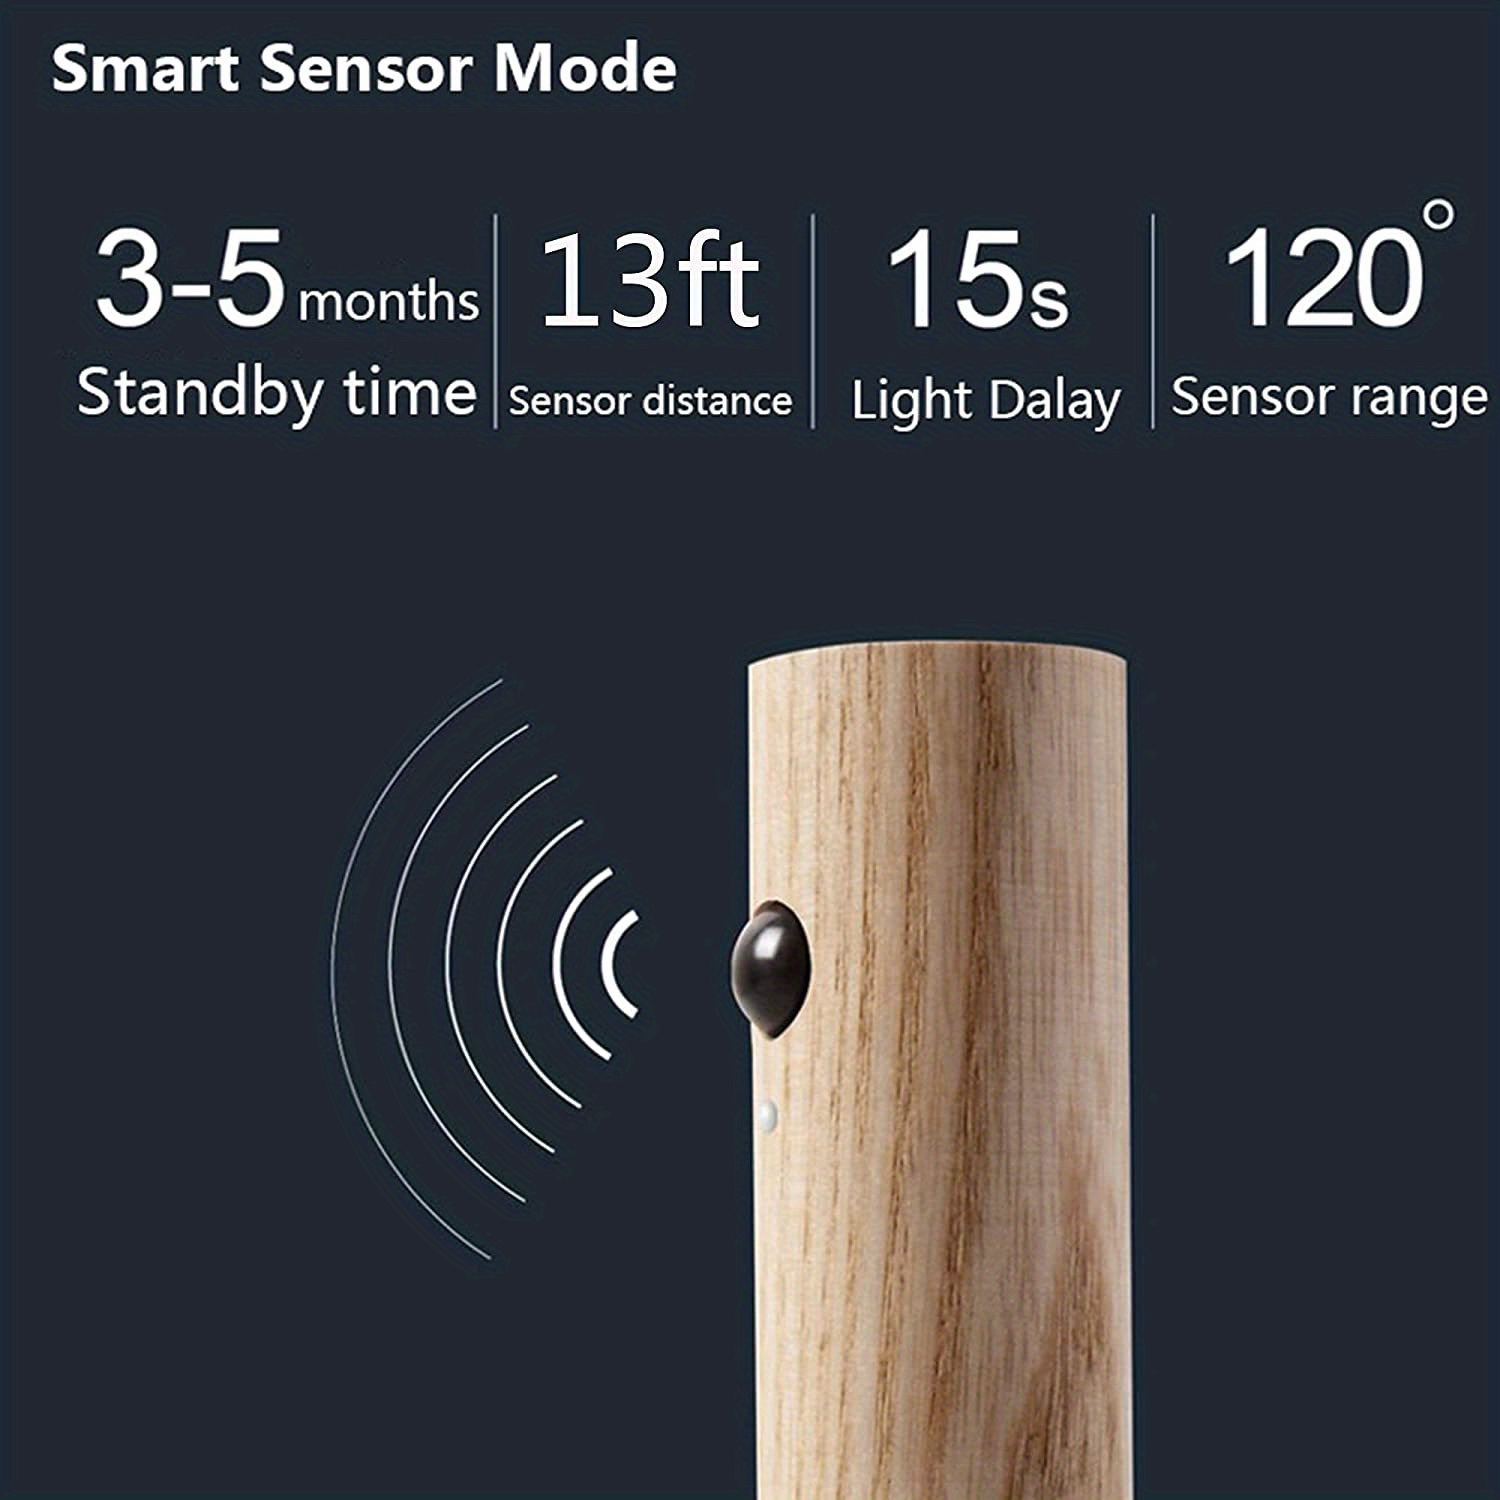 1pc Motion Sensor Light Wireless Led Night Light Magnetic